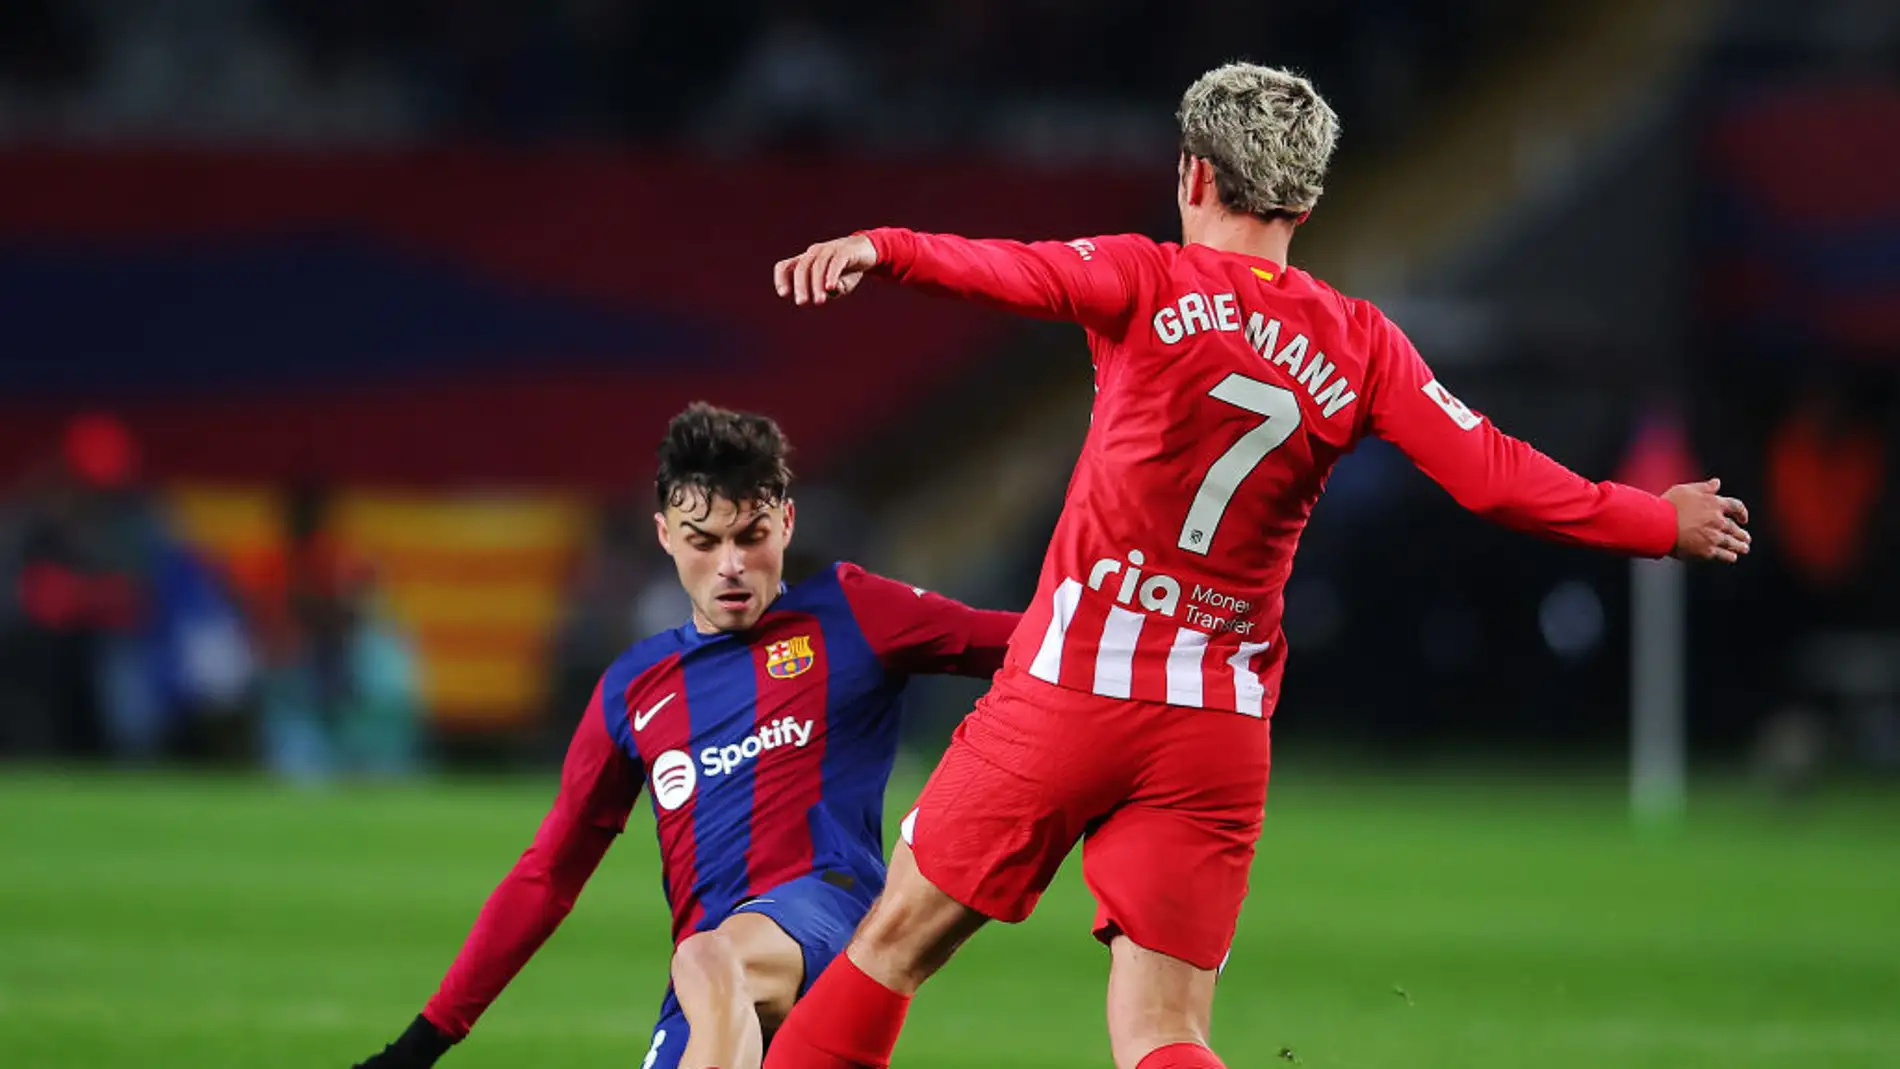 Pedri y Griezmann luchan por un balón dividido en un Barcelona - Atlético